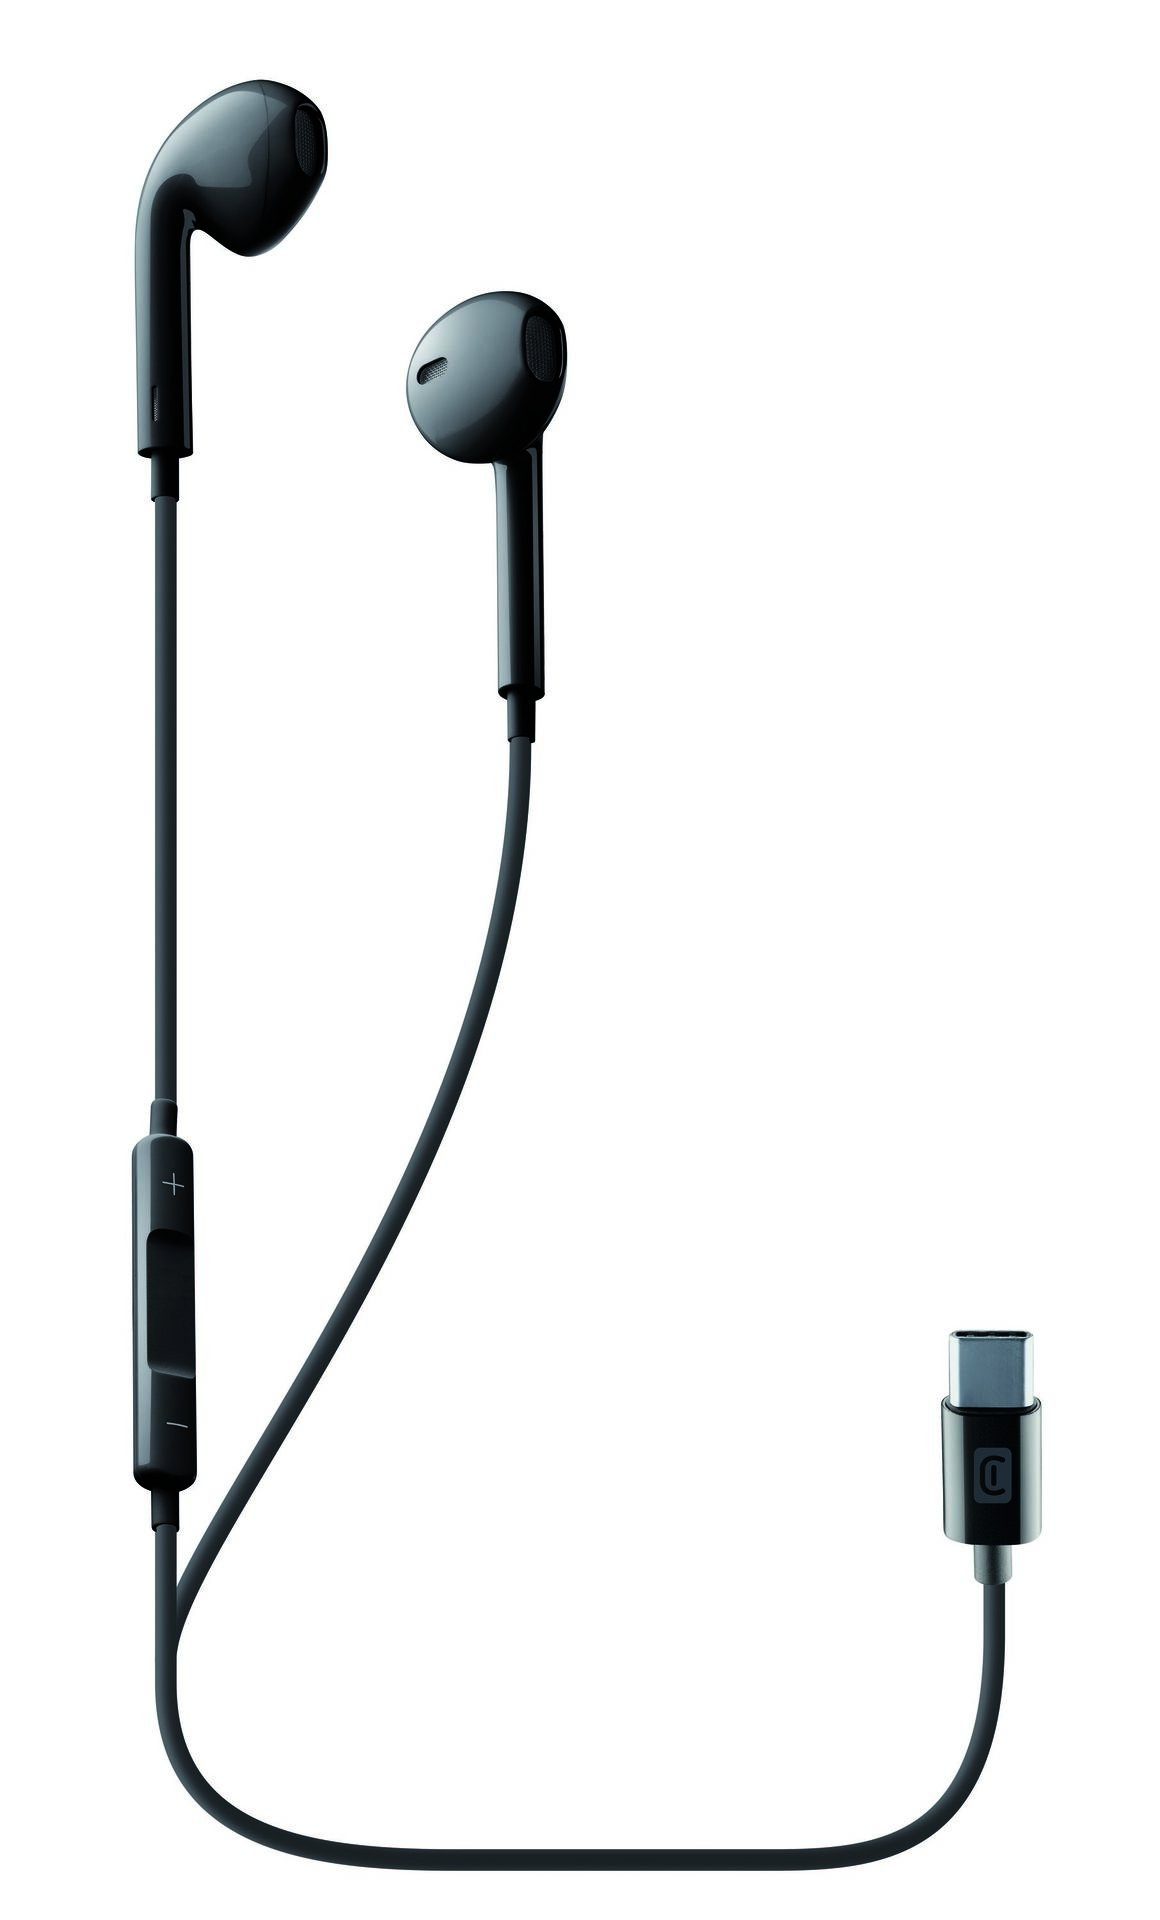 Cellularline USB-C Kopfhörer mit Mikrofon In-Ear-Kopfhörer